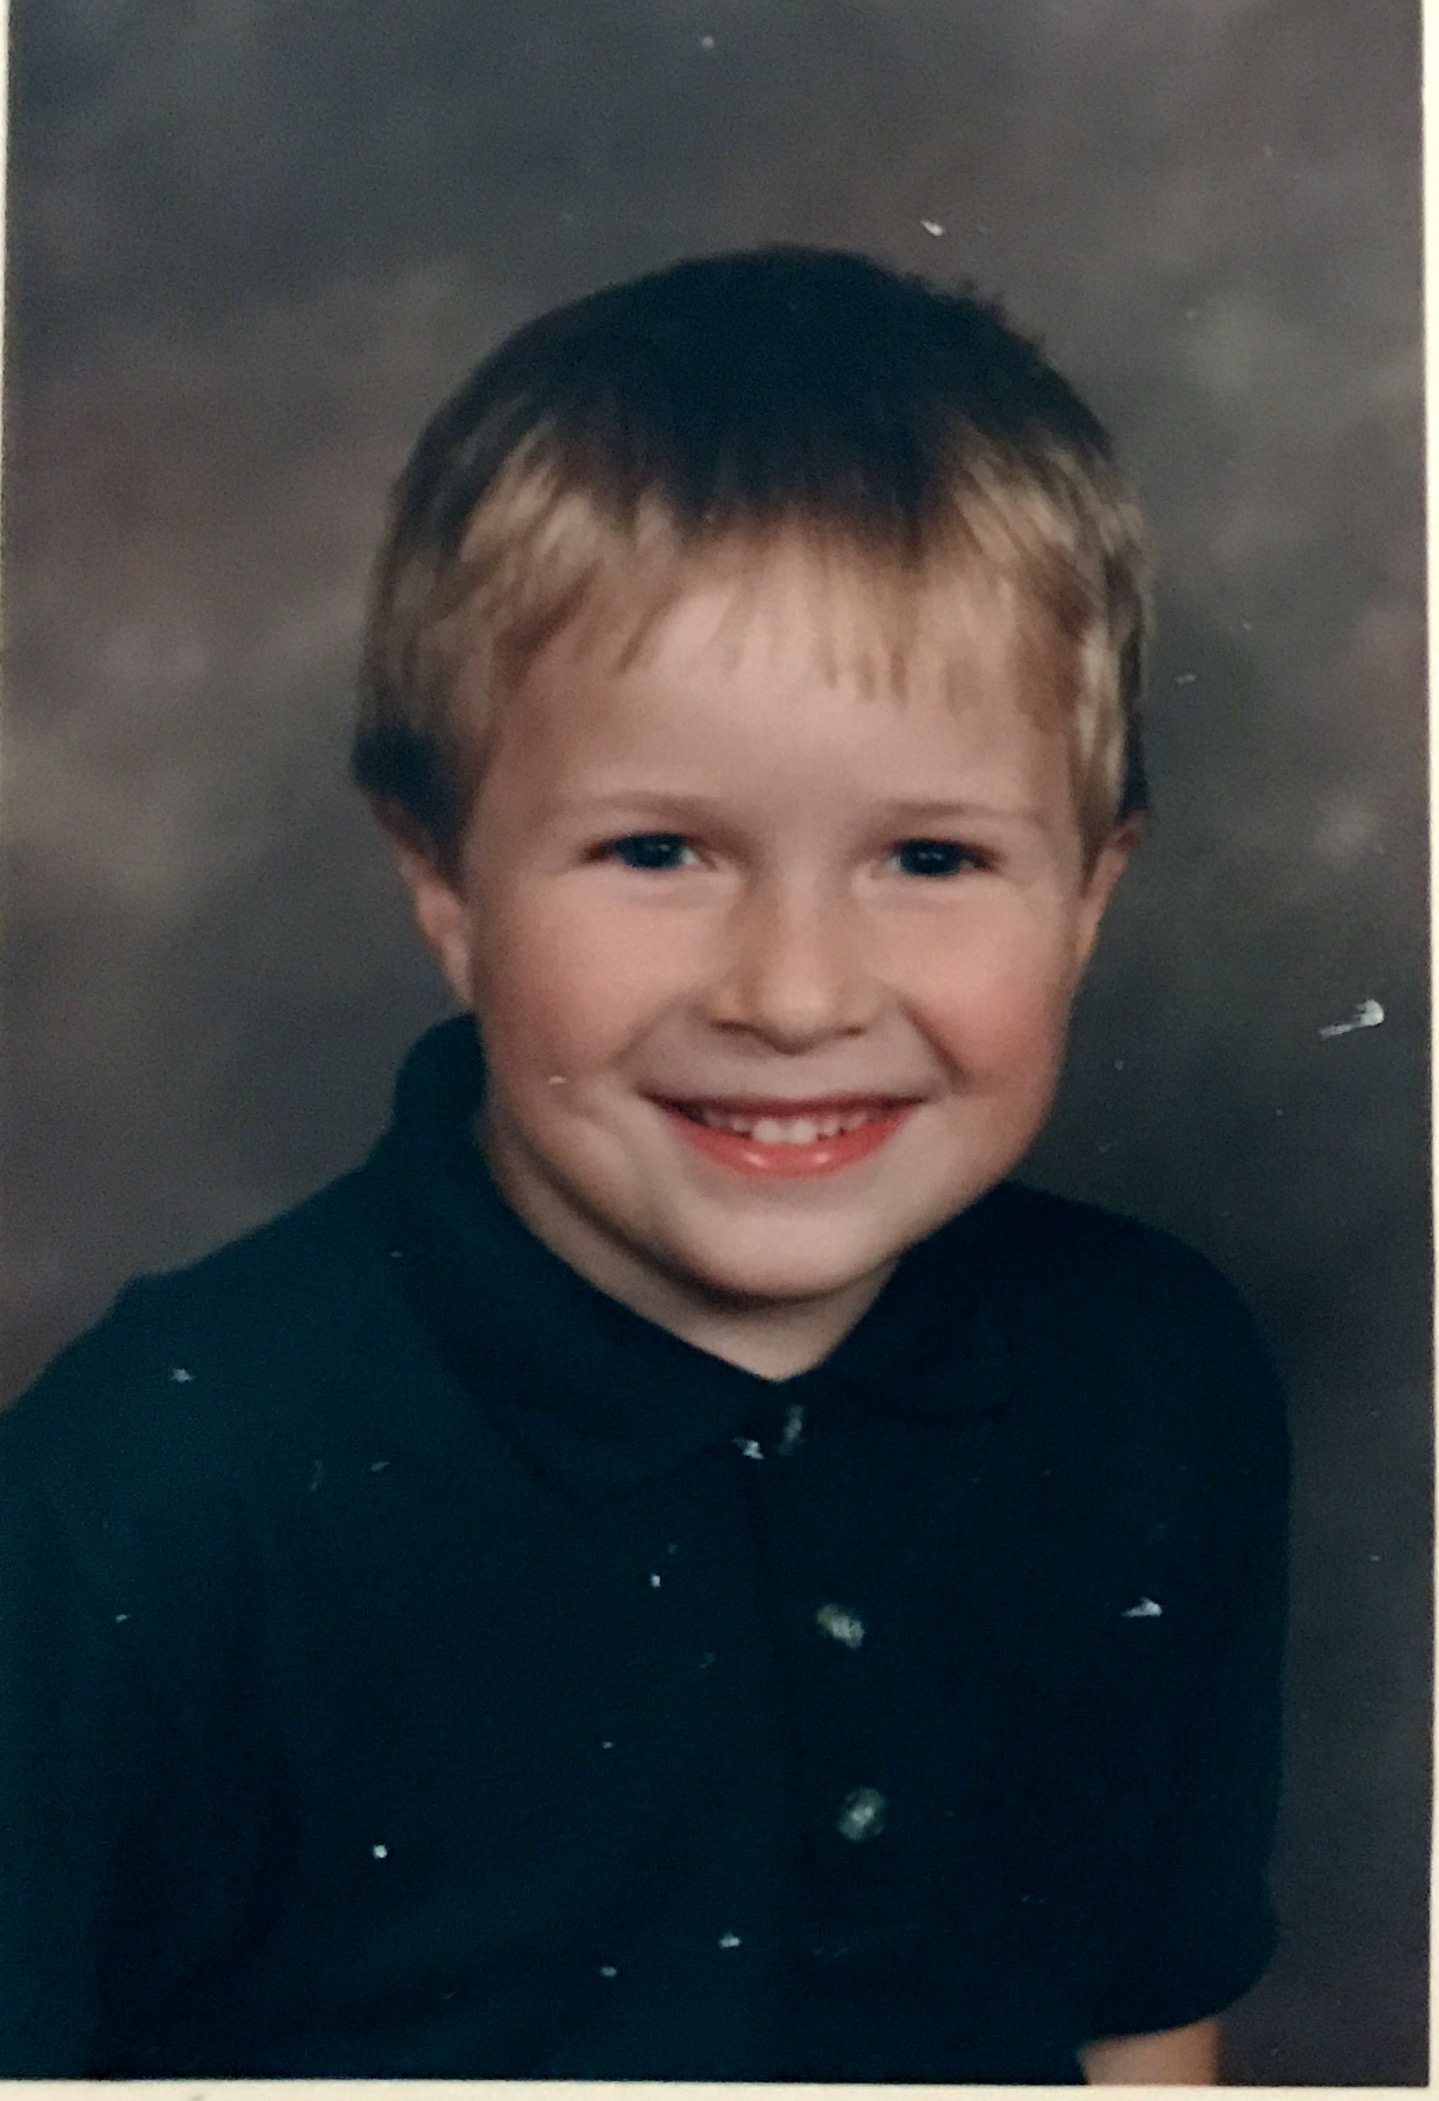 Mark at school 1995